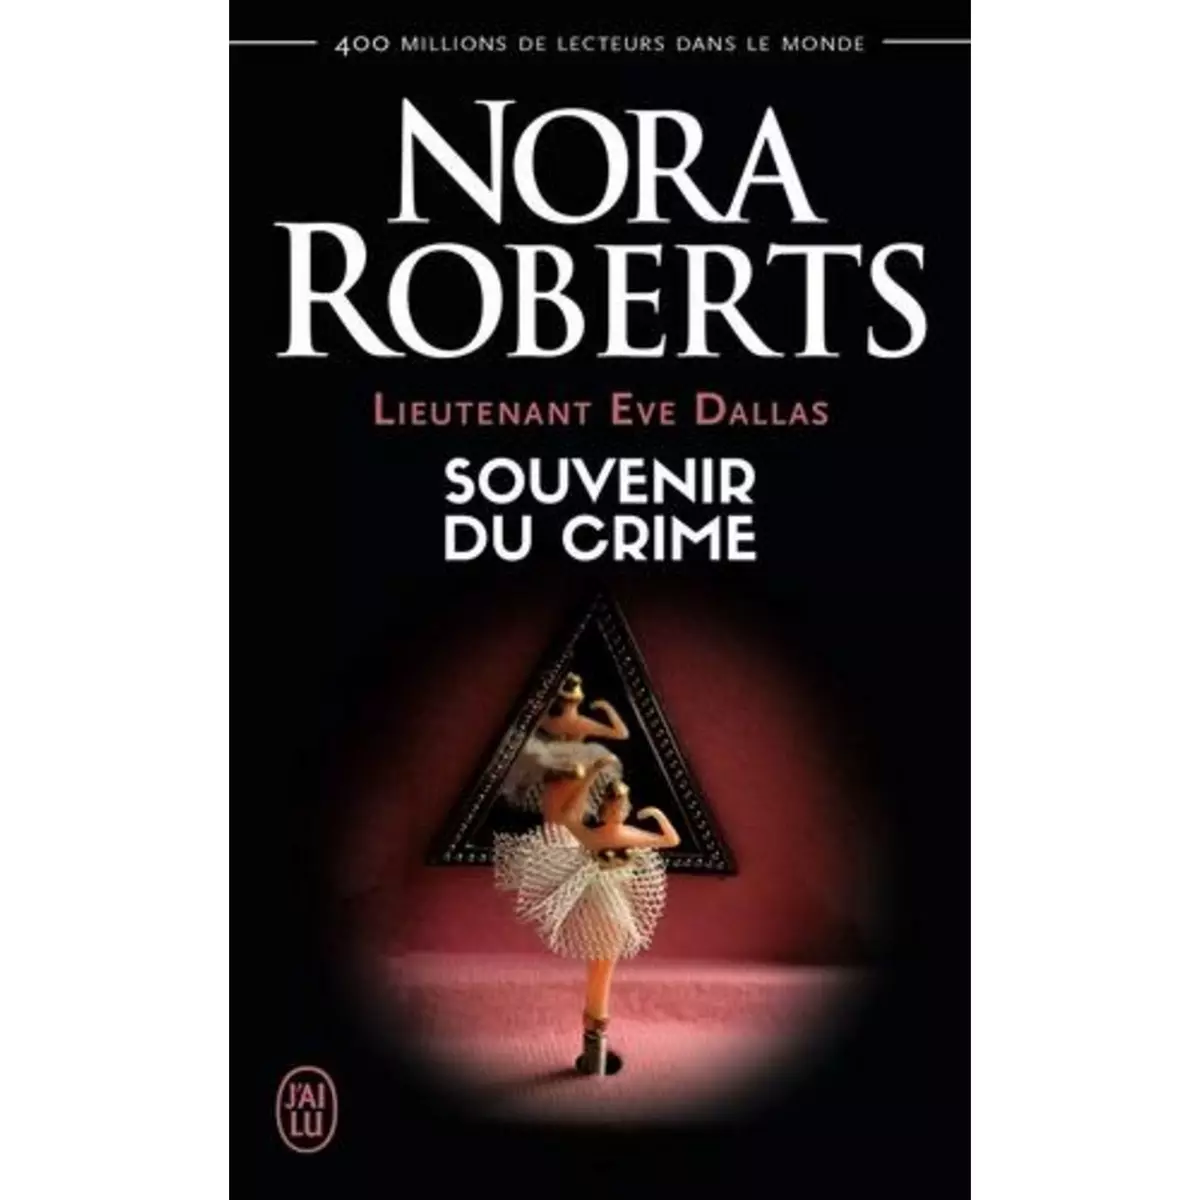  LIEUTENANT EVE DALLAS TOME 22 : SOUVENIR DU CRIME, Roberts Nora